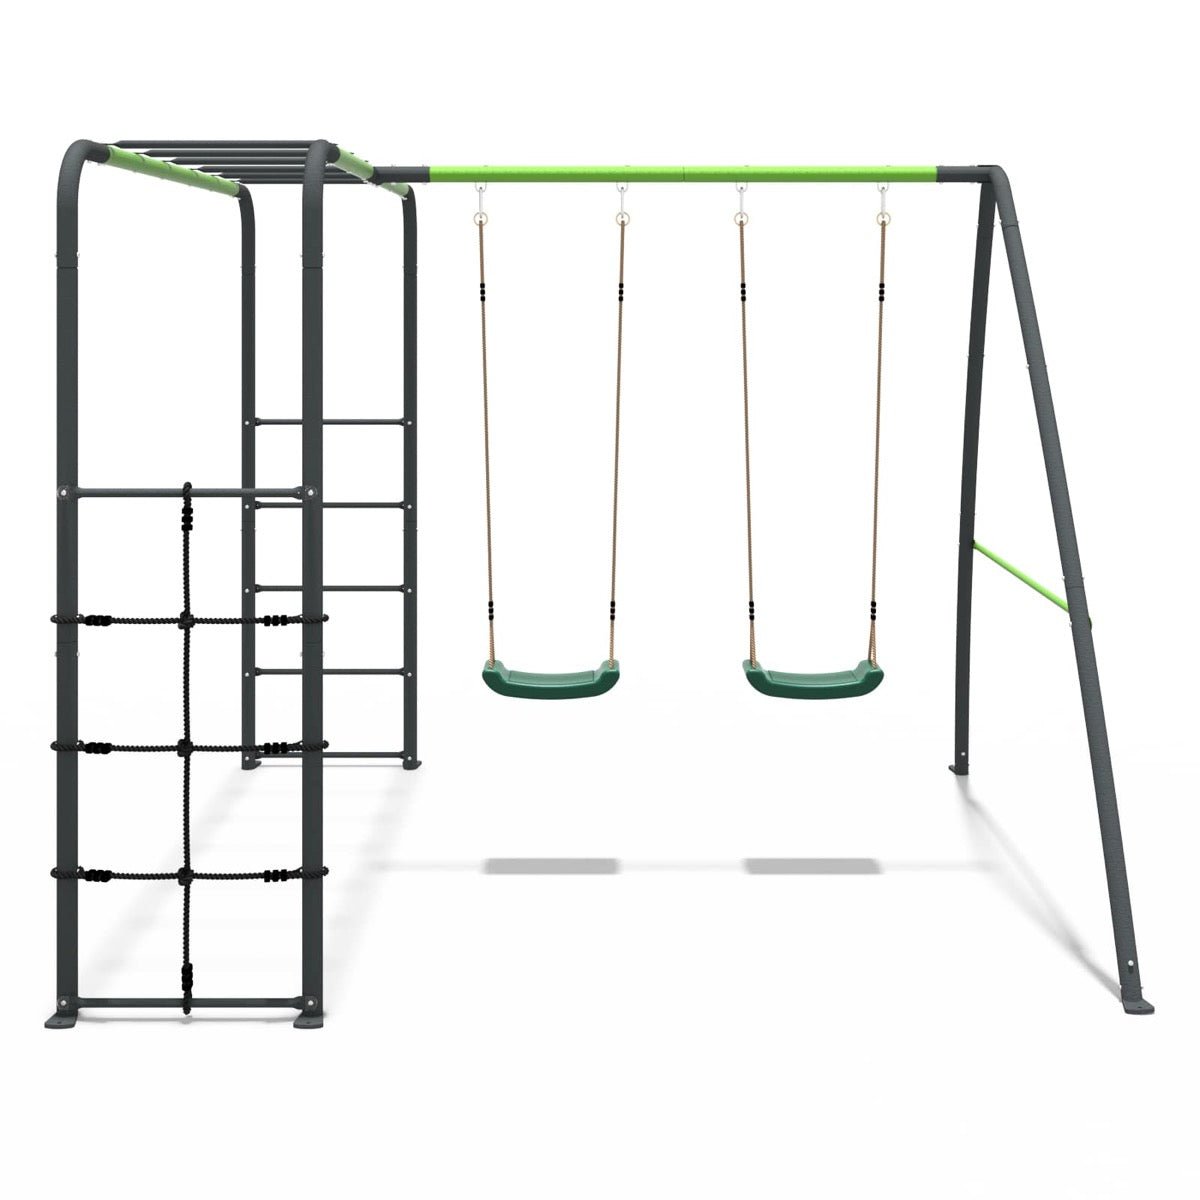 Rebo Steel Series Metal Swing Set with Monkey Bars - Double Swing Green